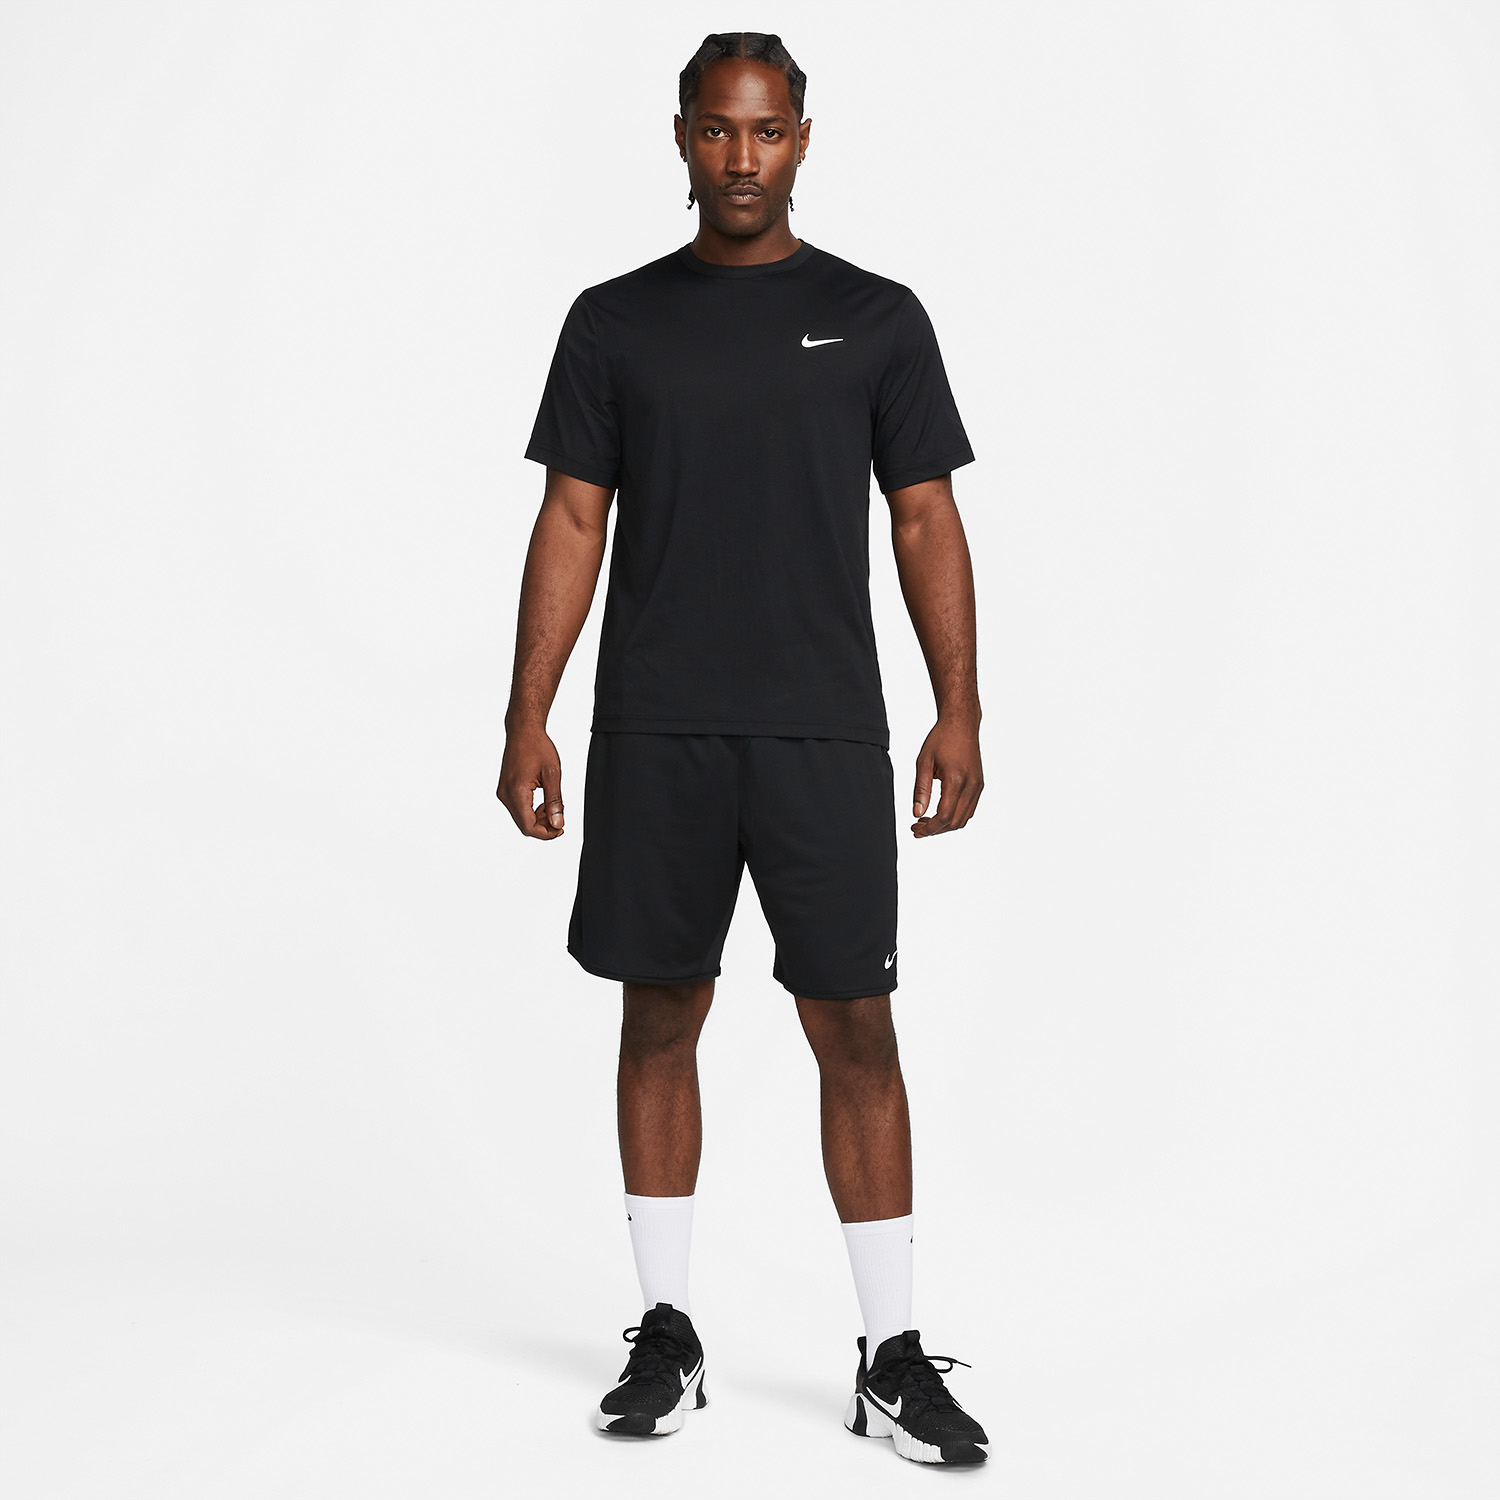 Nike Dri-FIT Hyverse Men's Training T-Shirt - Black/White